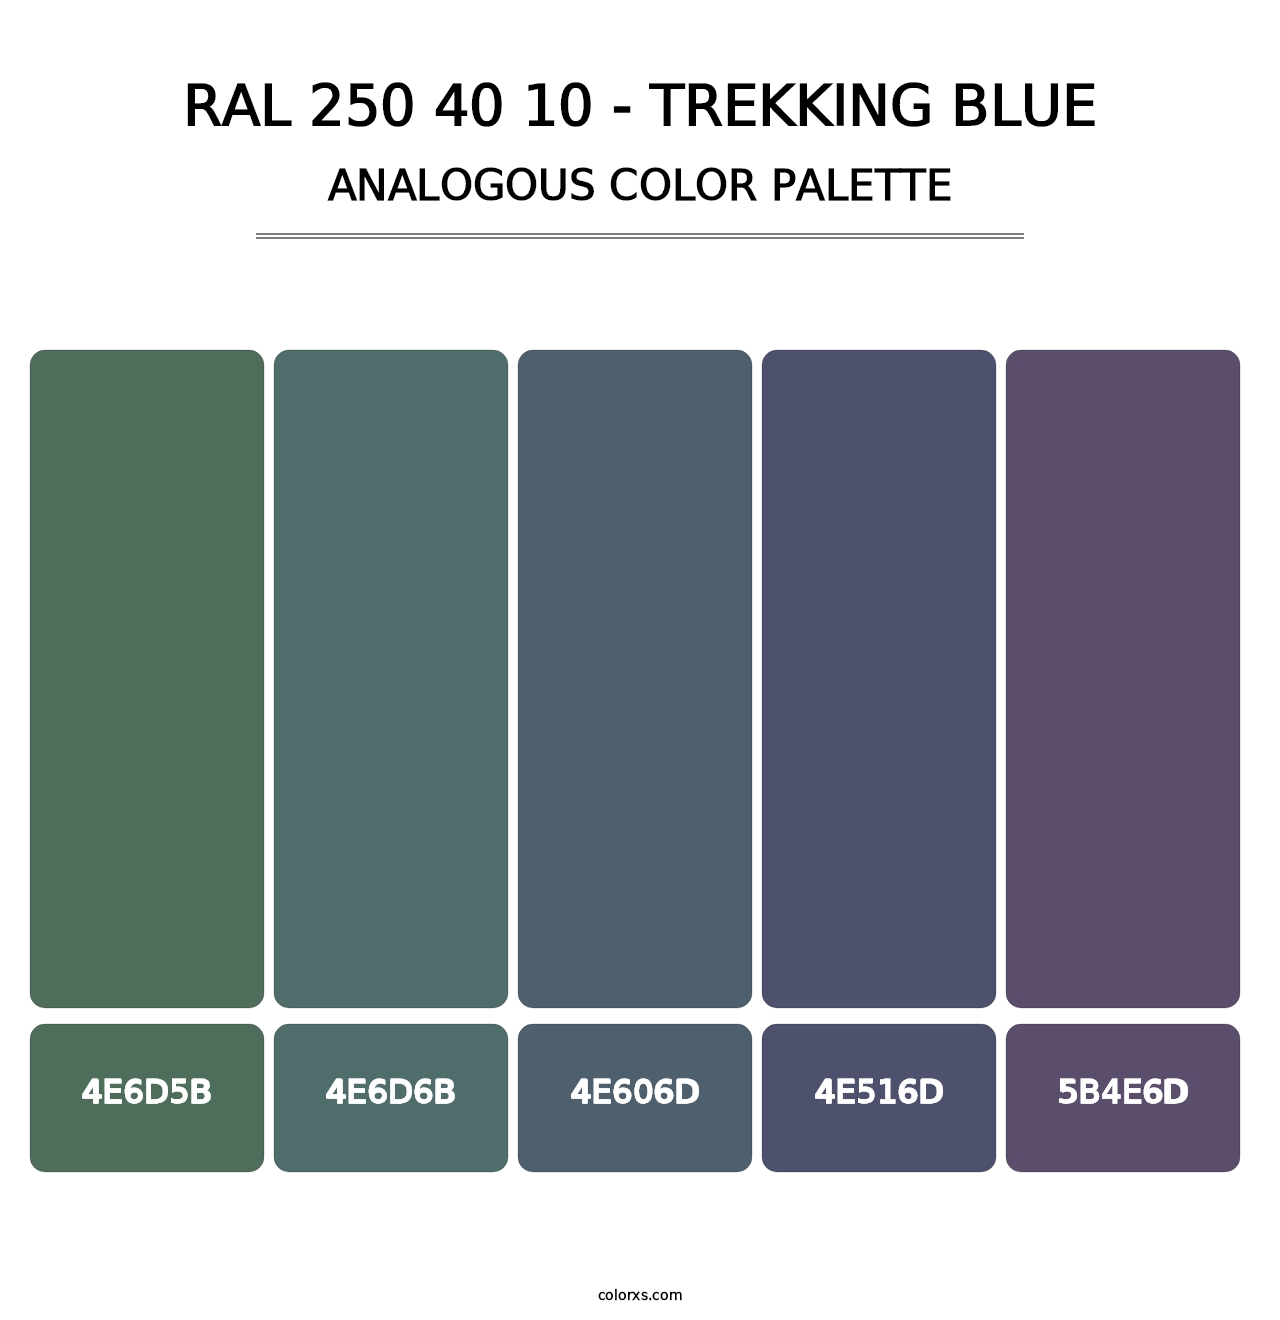 RAL 250 40 10 - Trekking Blue - Analogous Color Palette